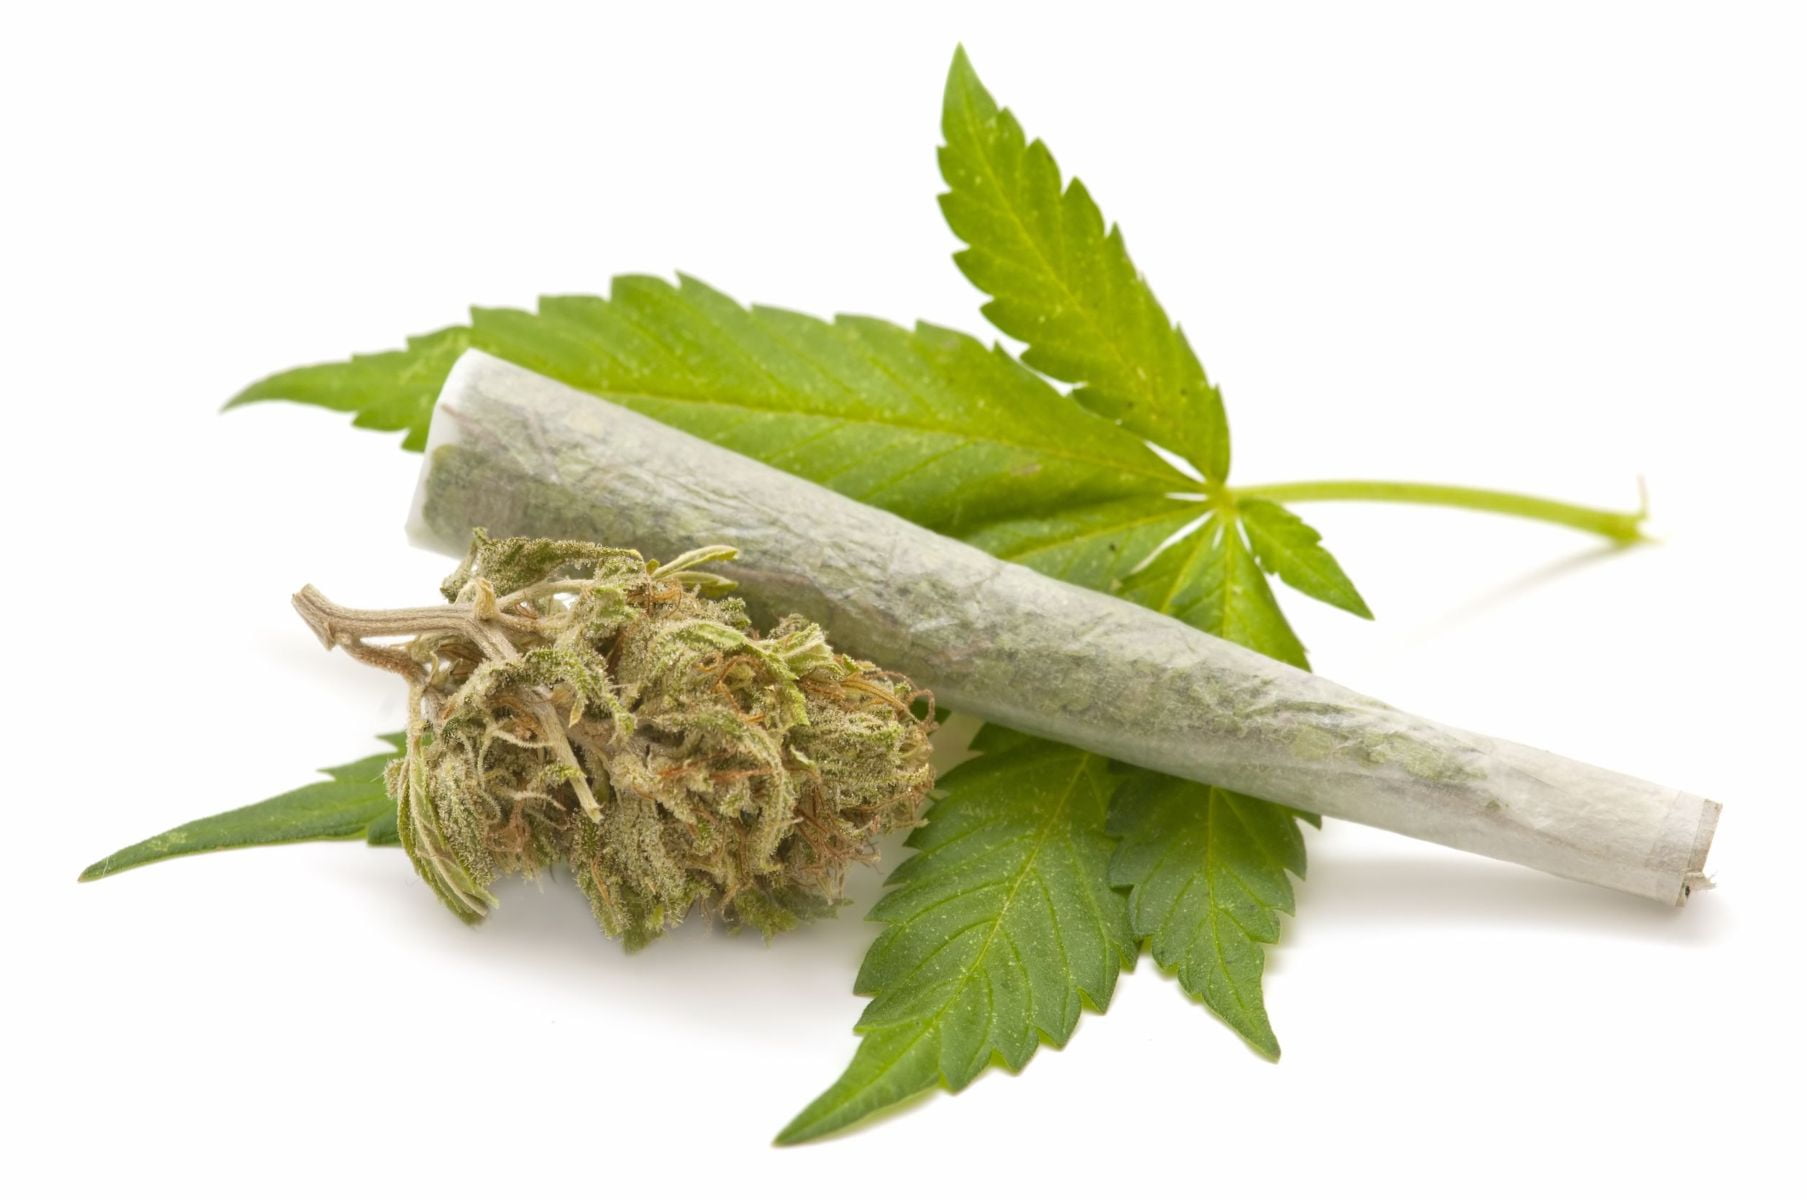 drugs, marijuana, weed, leaf, plant part, white background